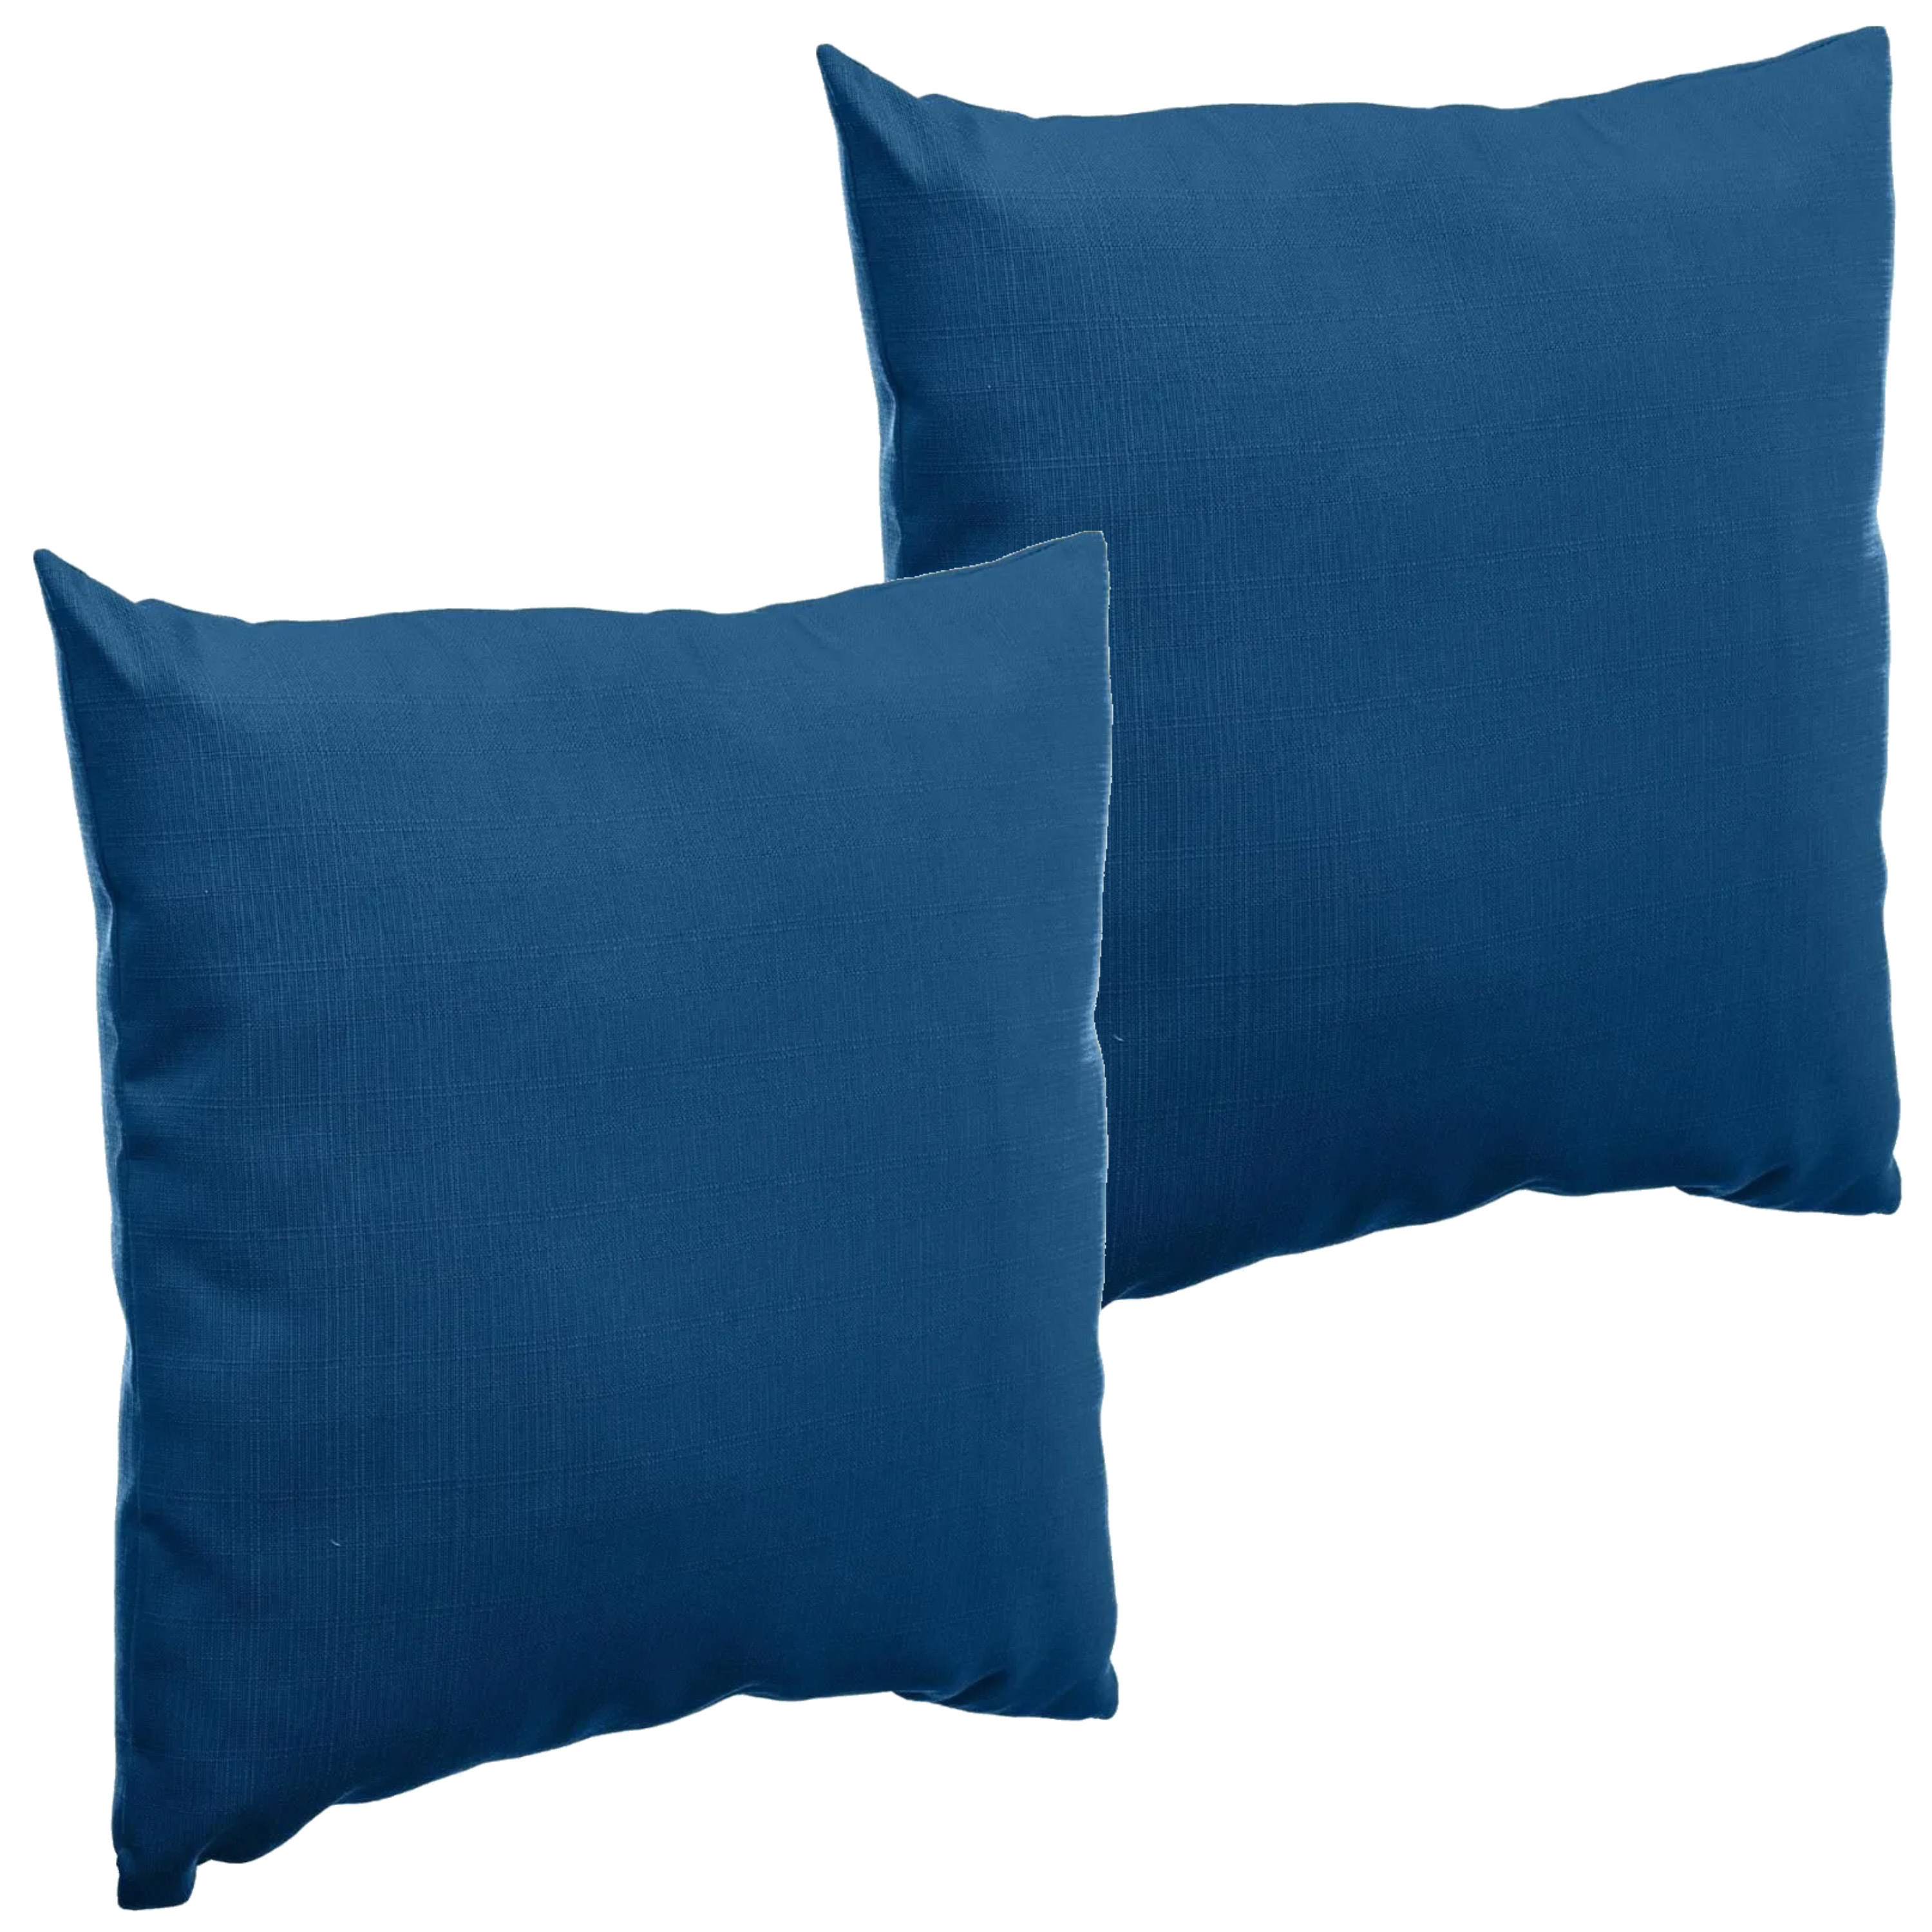 Set van 2x stuks bank-sier-tuin kussens voor binnen en buiten in de kleur Indigo blauw 40 x 40 x 10